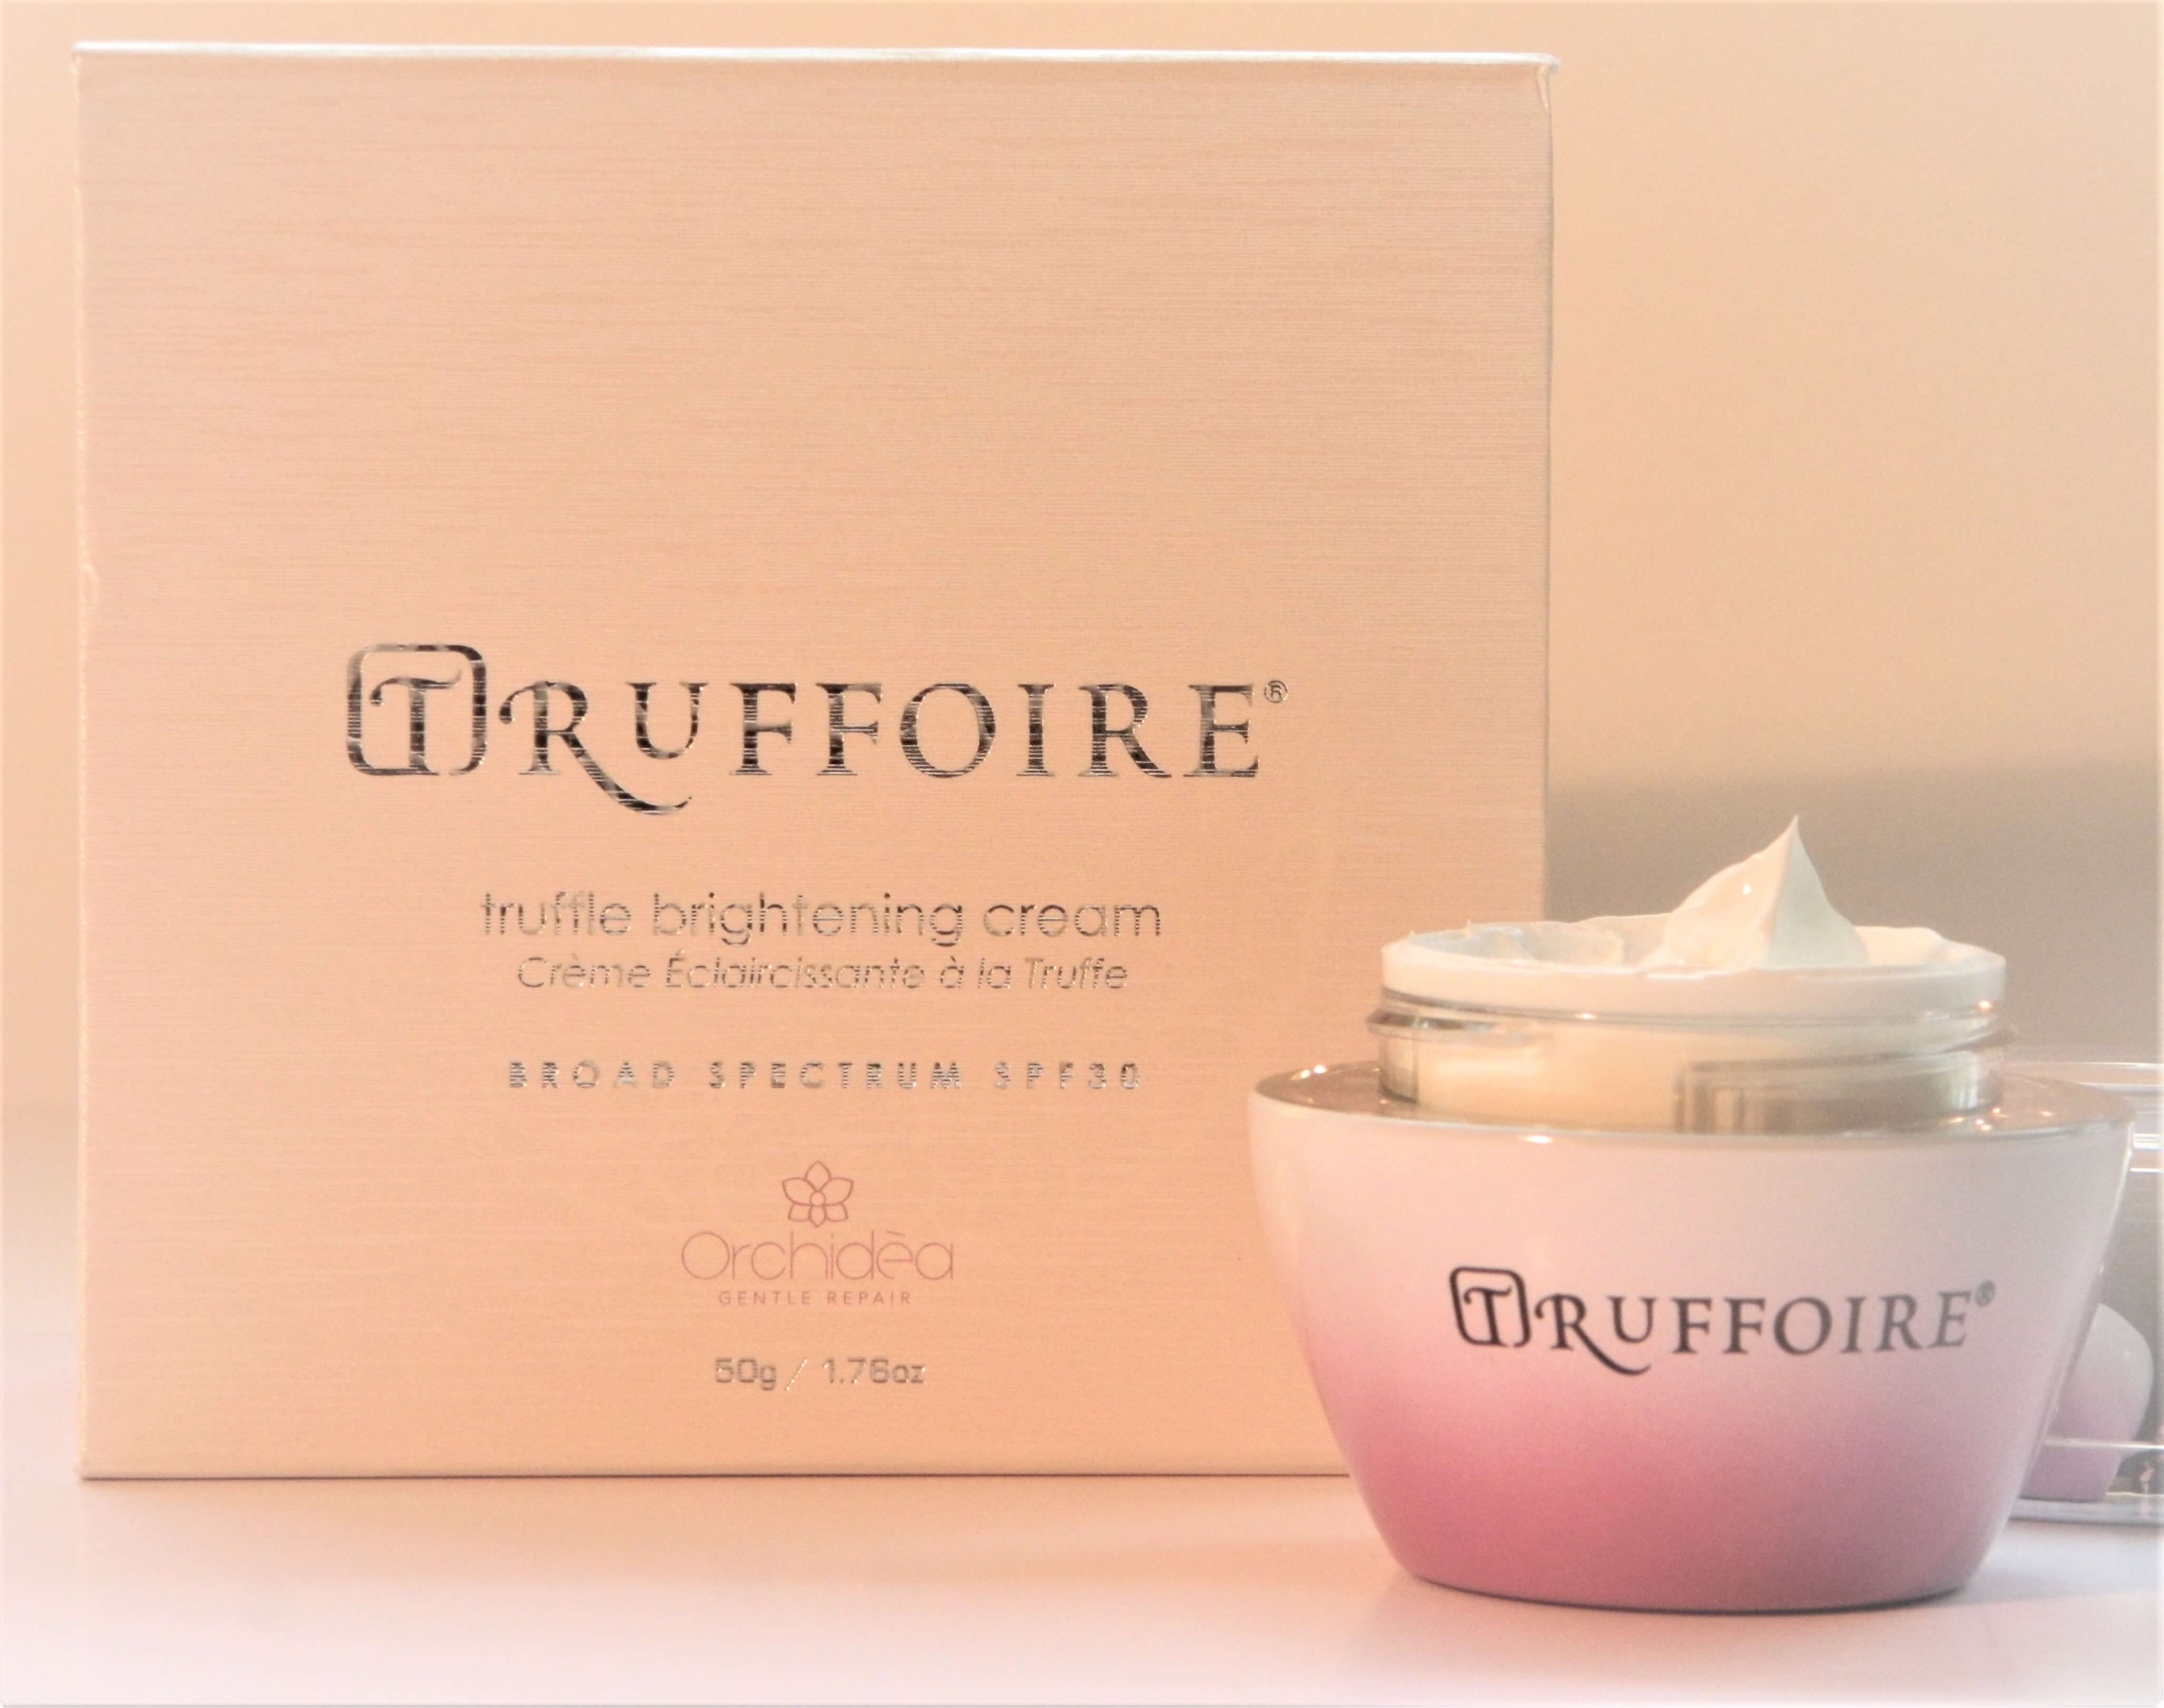 Truffoire cream